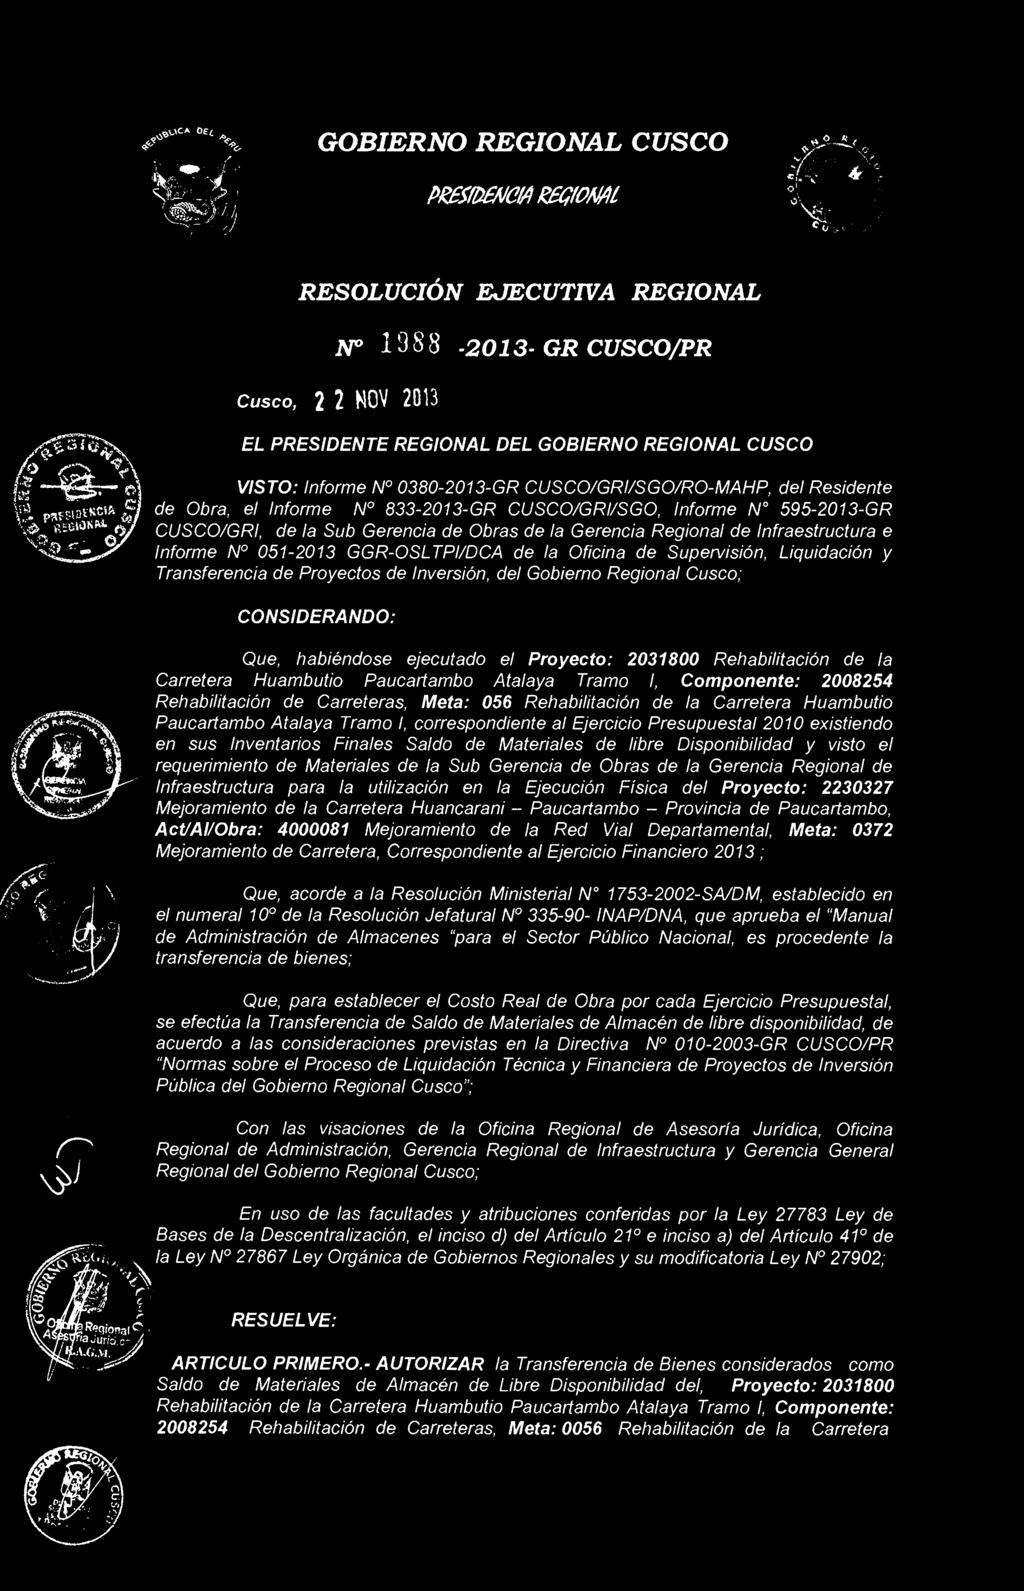 de la Gerencia Regional de Infraestructura e Informe N 051-2013 GGR-OSLTPI/DCA de la Oficina de Supervisión, Liquidación y Transferencia de Proyectos de Inversión, del Gobierno Regional Cusco;